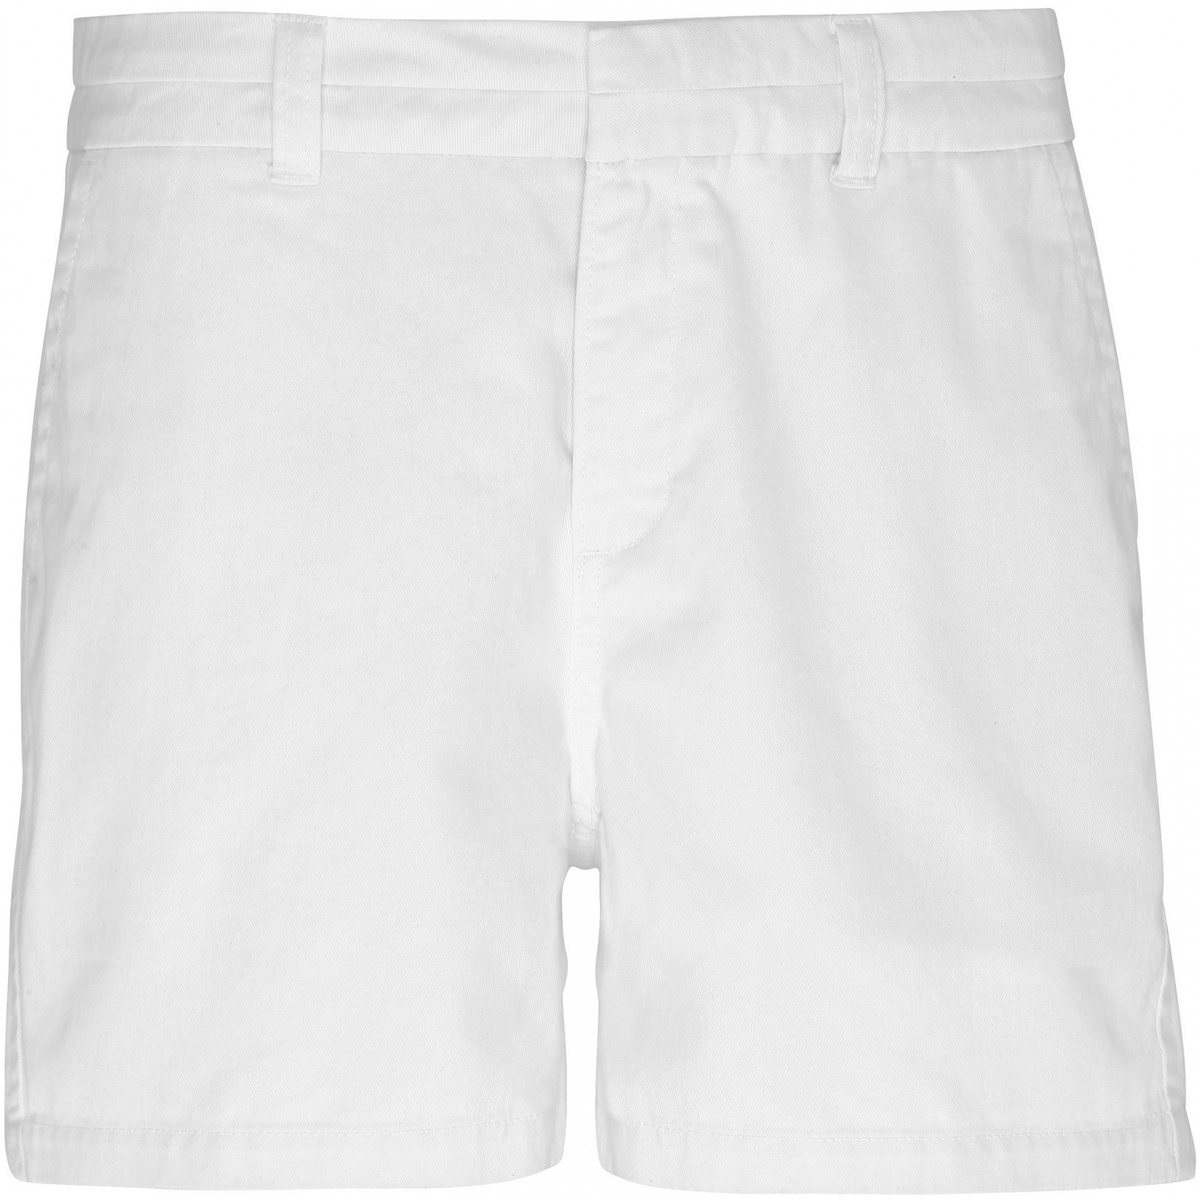 Vêlogo Femme Shorts / Bermudas Asquith & Fox AQ061 Blanc